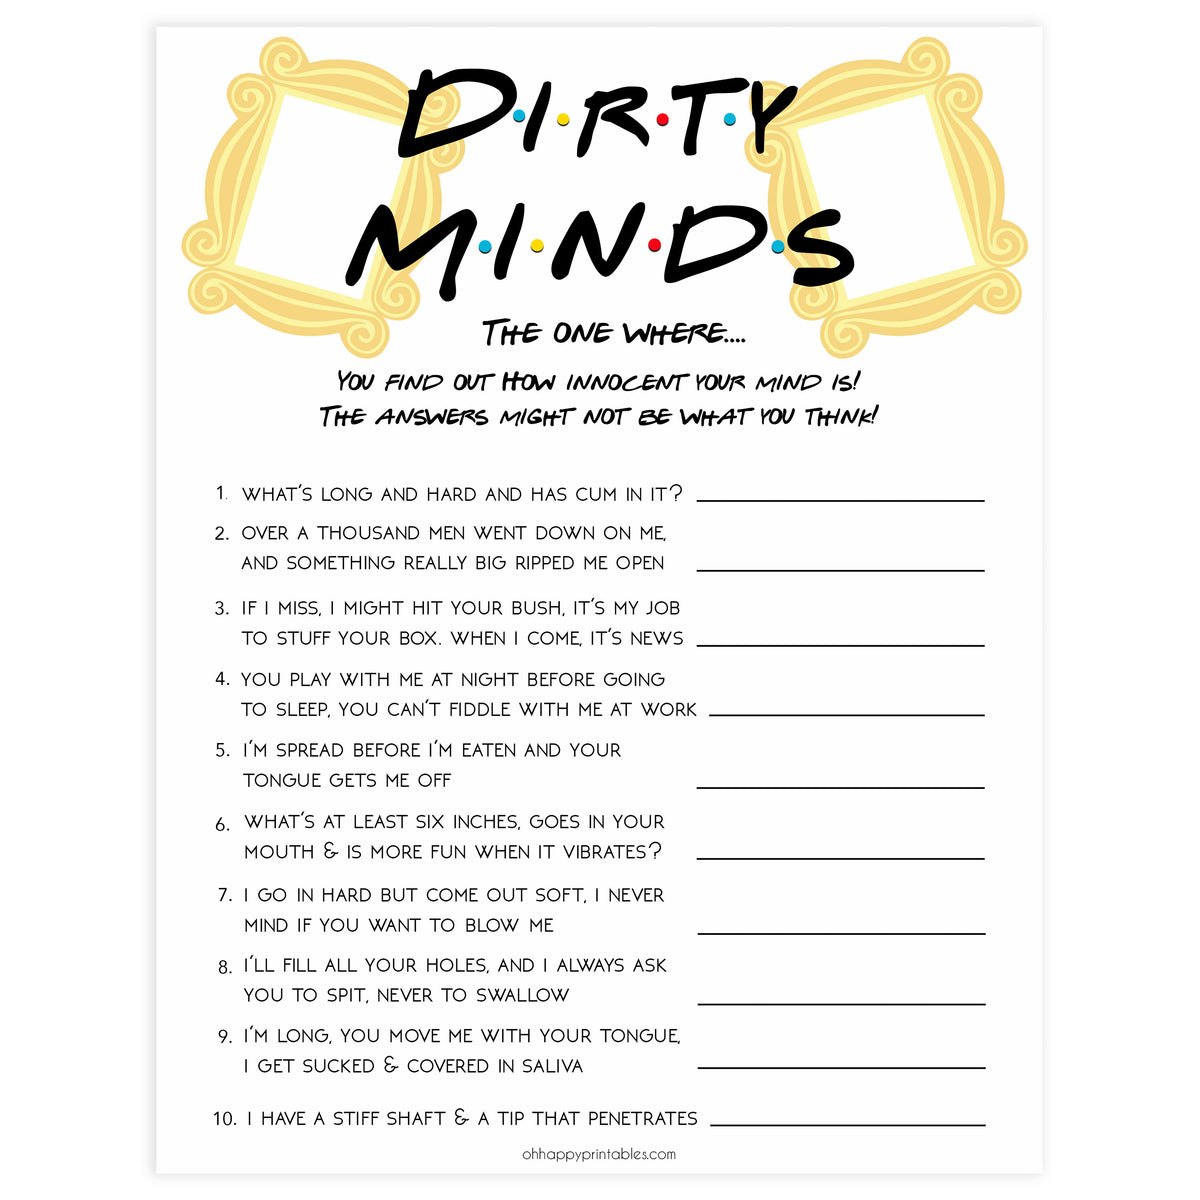 Dirty Minds Game Printable Free - Printable Templates